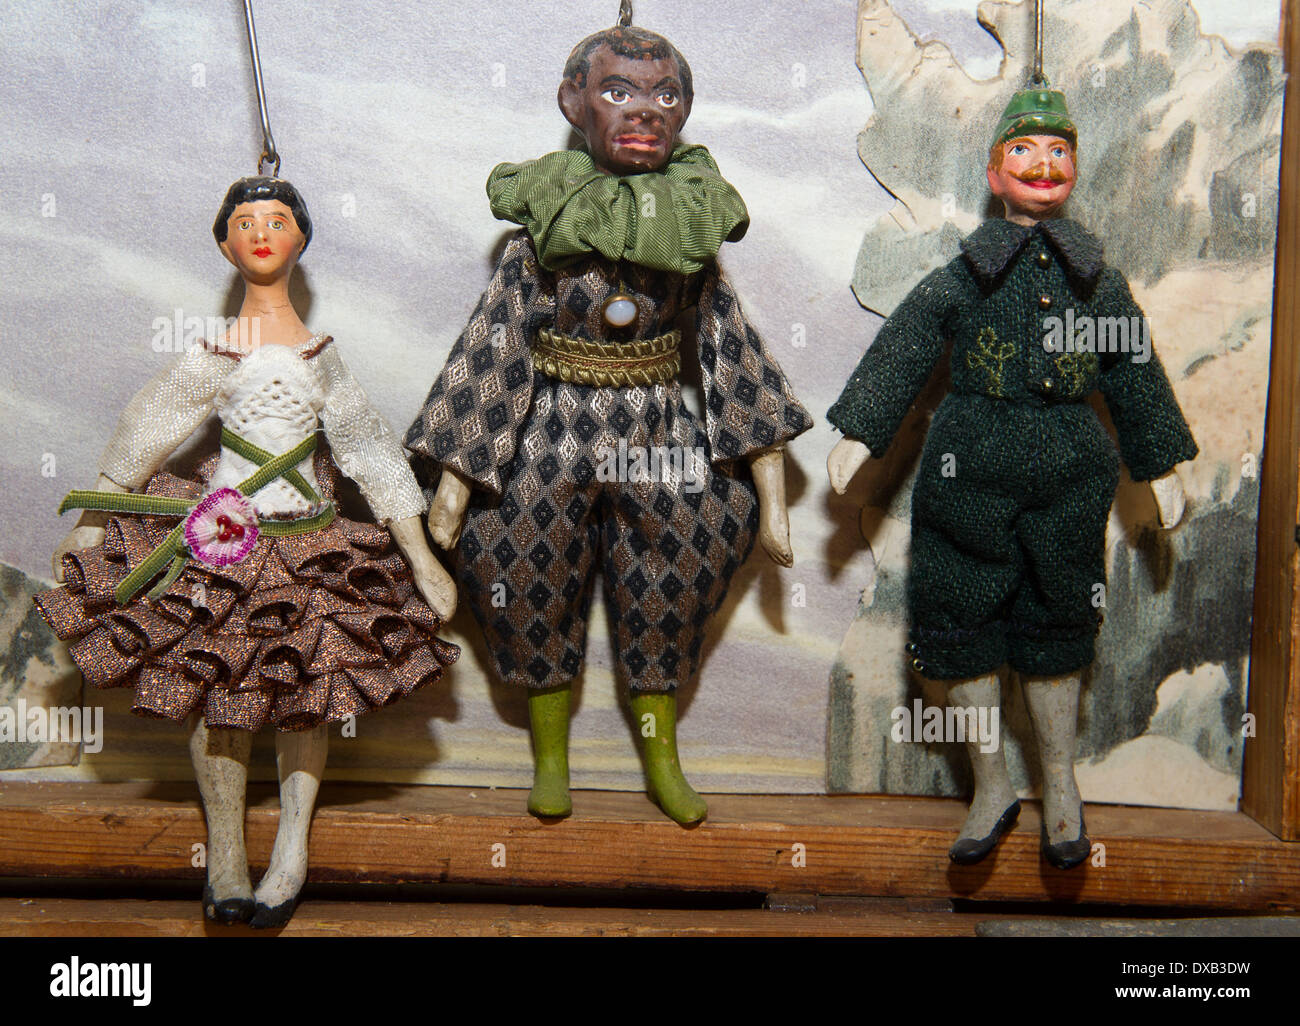 Vitte, Alemania. 20 Mar, 2014. Diez centímetros grandes marionetas de  Bohemia desde el siglo XIX se levantan en el nuevo museo del teatro de  marionetas "Homunkulus' en Hiddensee isla en Vitte, Alemania,